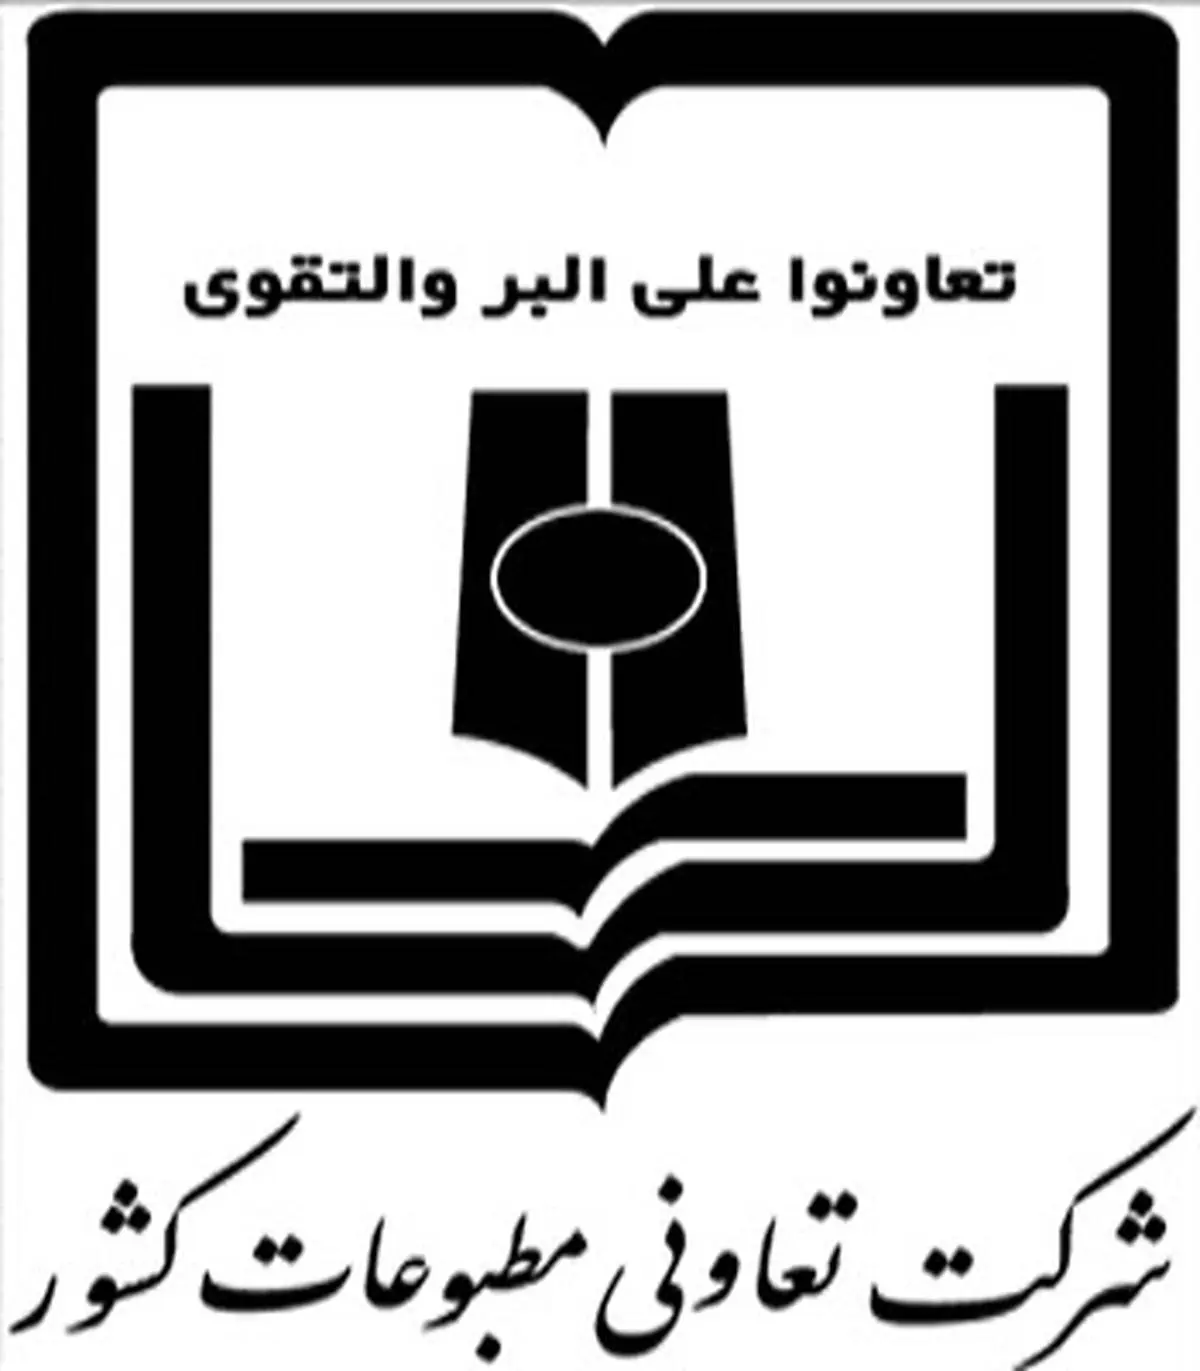 مدیر عامل و ریئس هیئت مدیره تعاونی مطبوعات ایران انتخاب شدند